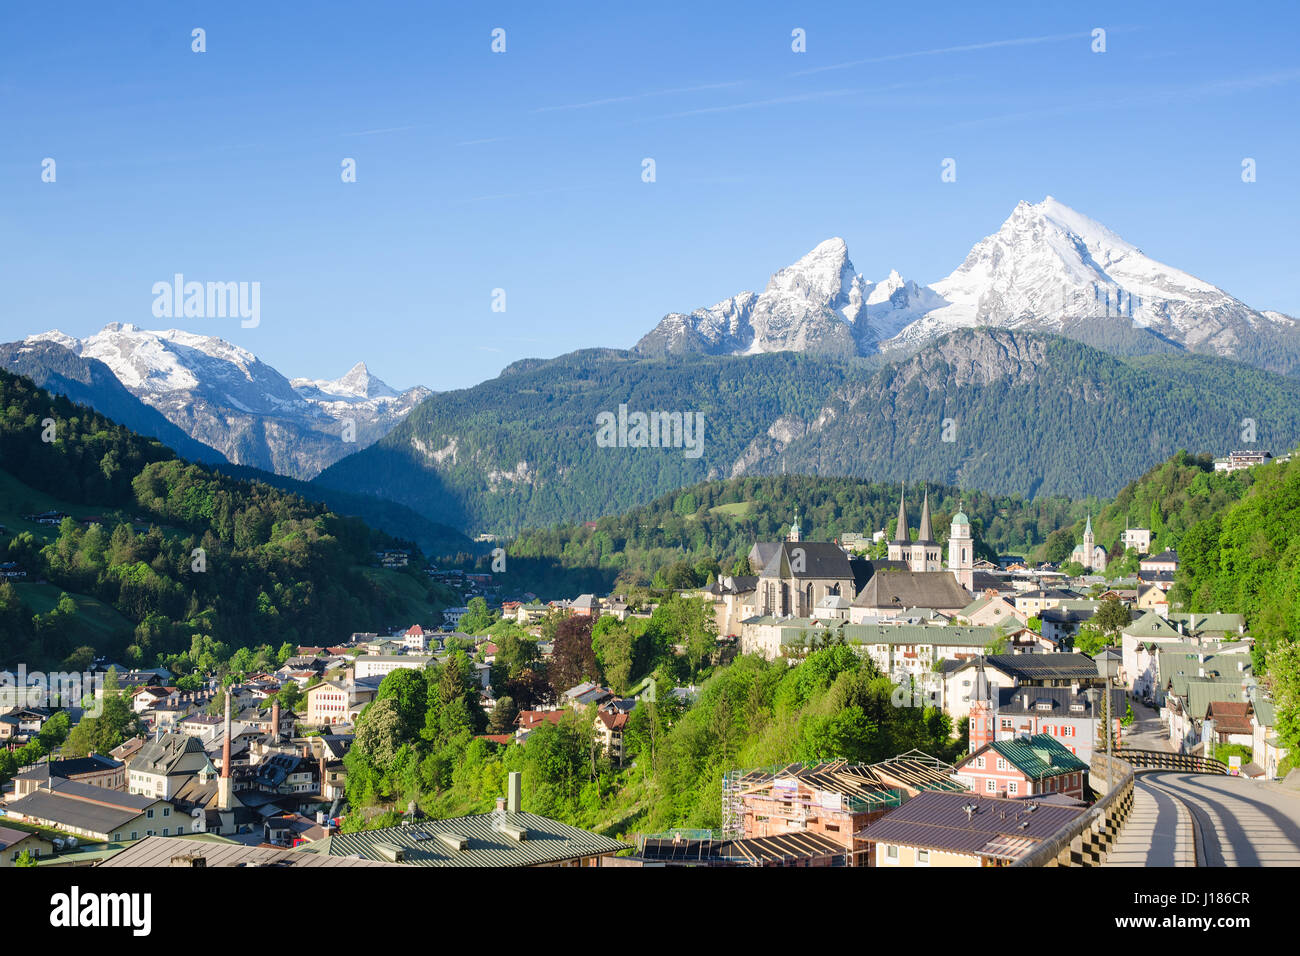 Paysage Pastoral de petite commune Berchtesgaden et des sommets enneigés de la montagne Watzmann dans le sud de la Bavière Banque D'Images